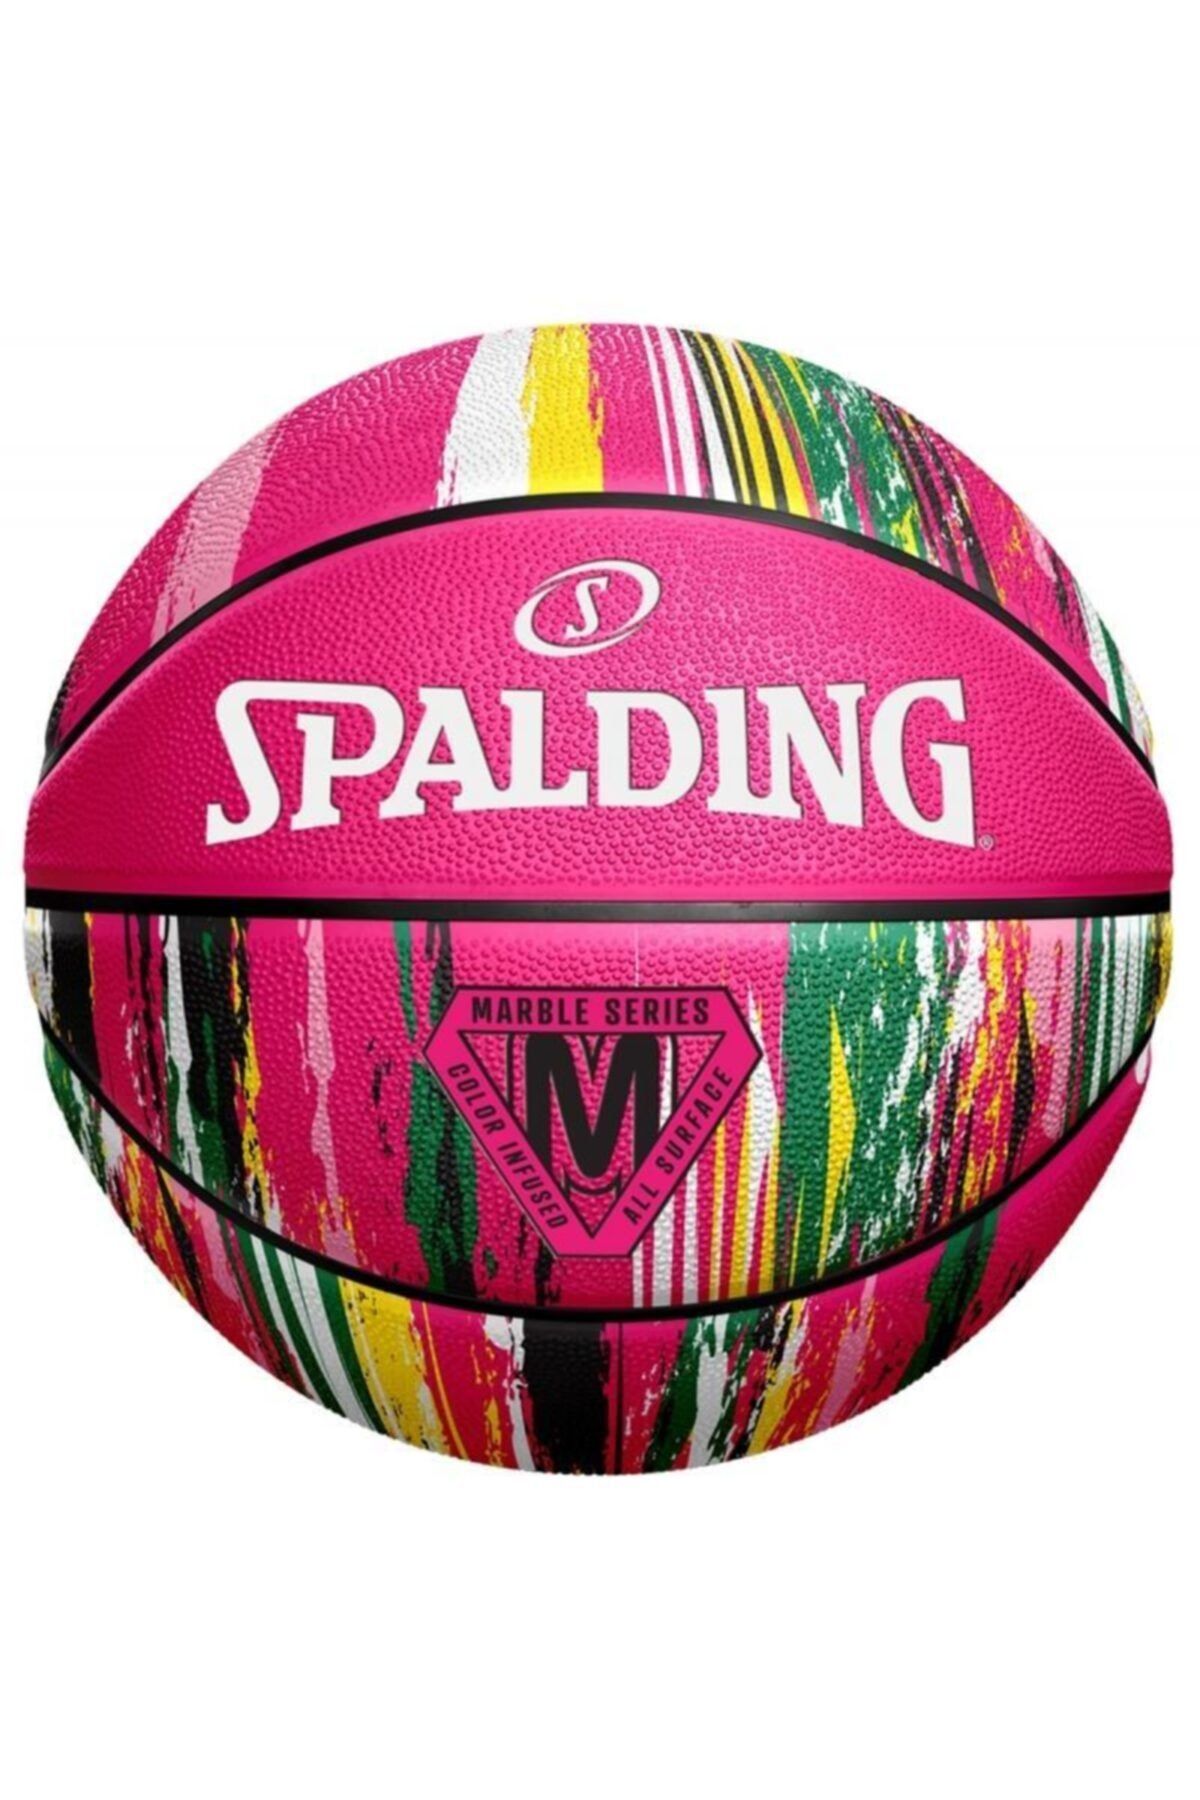 Spalding Basket Topu 2021 Marble Series Pink 84-402z Size 7